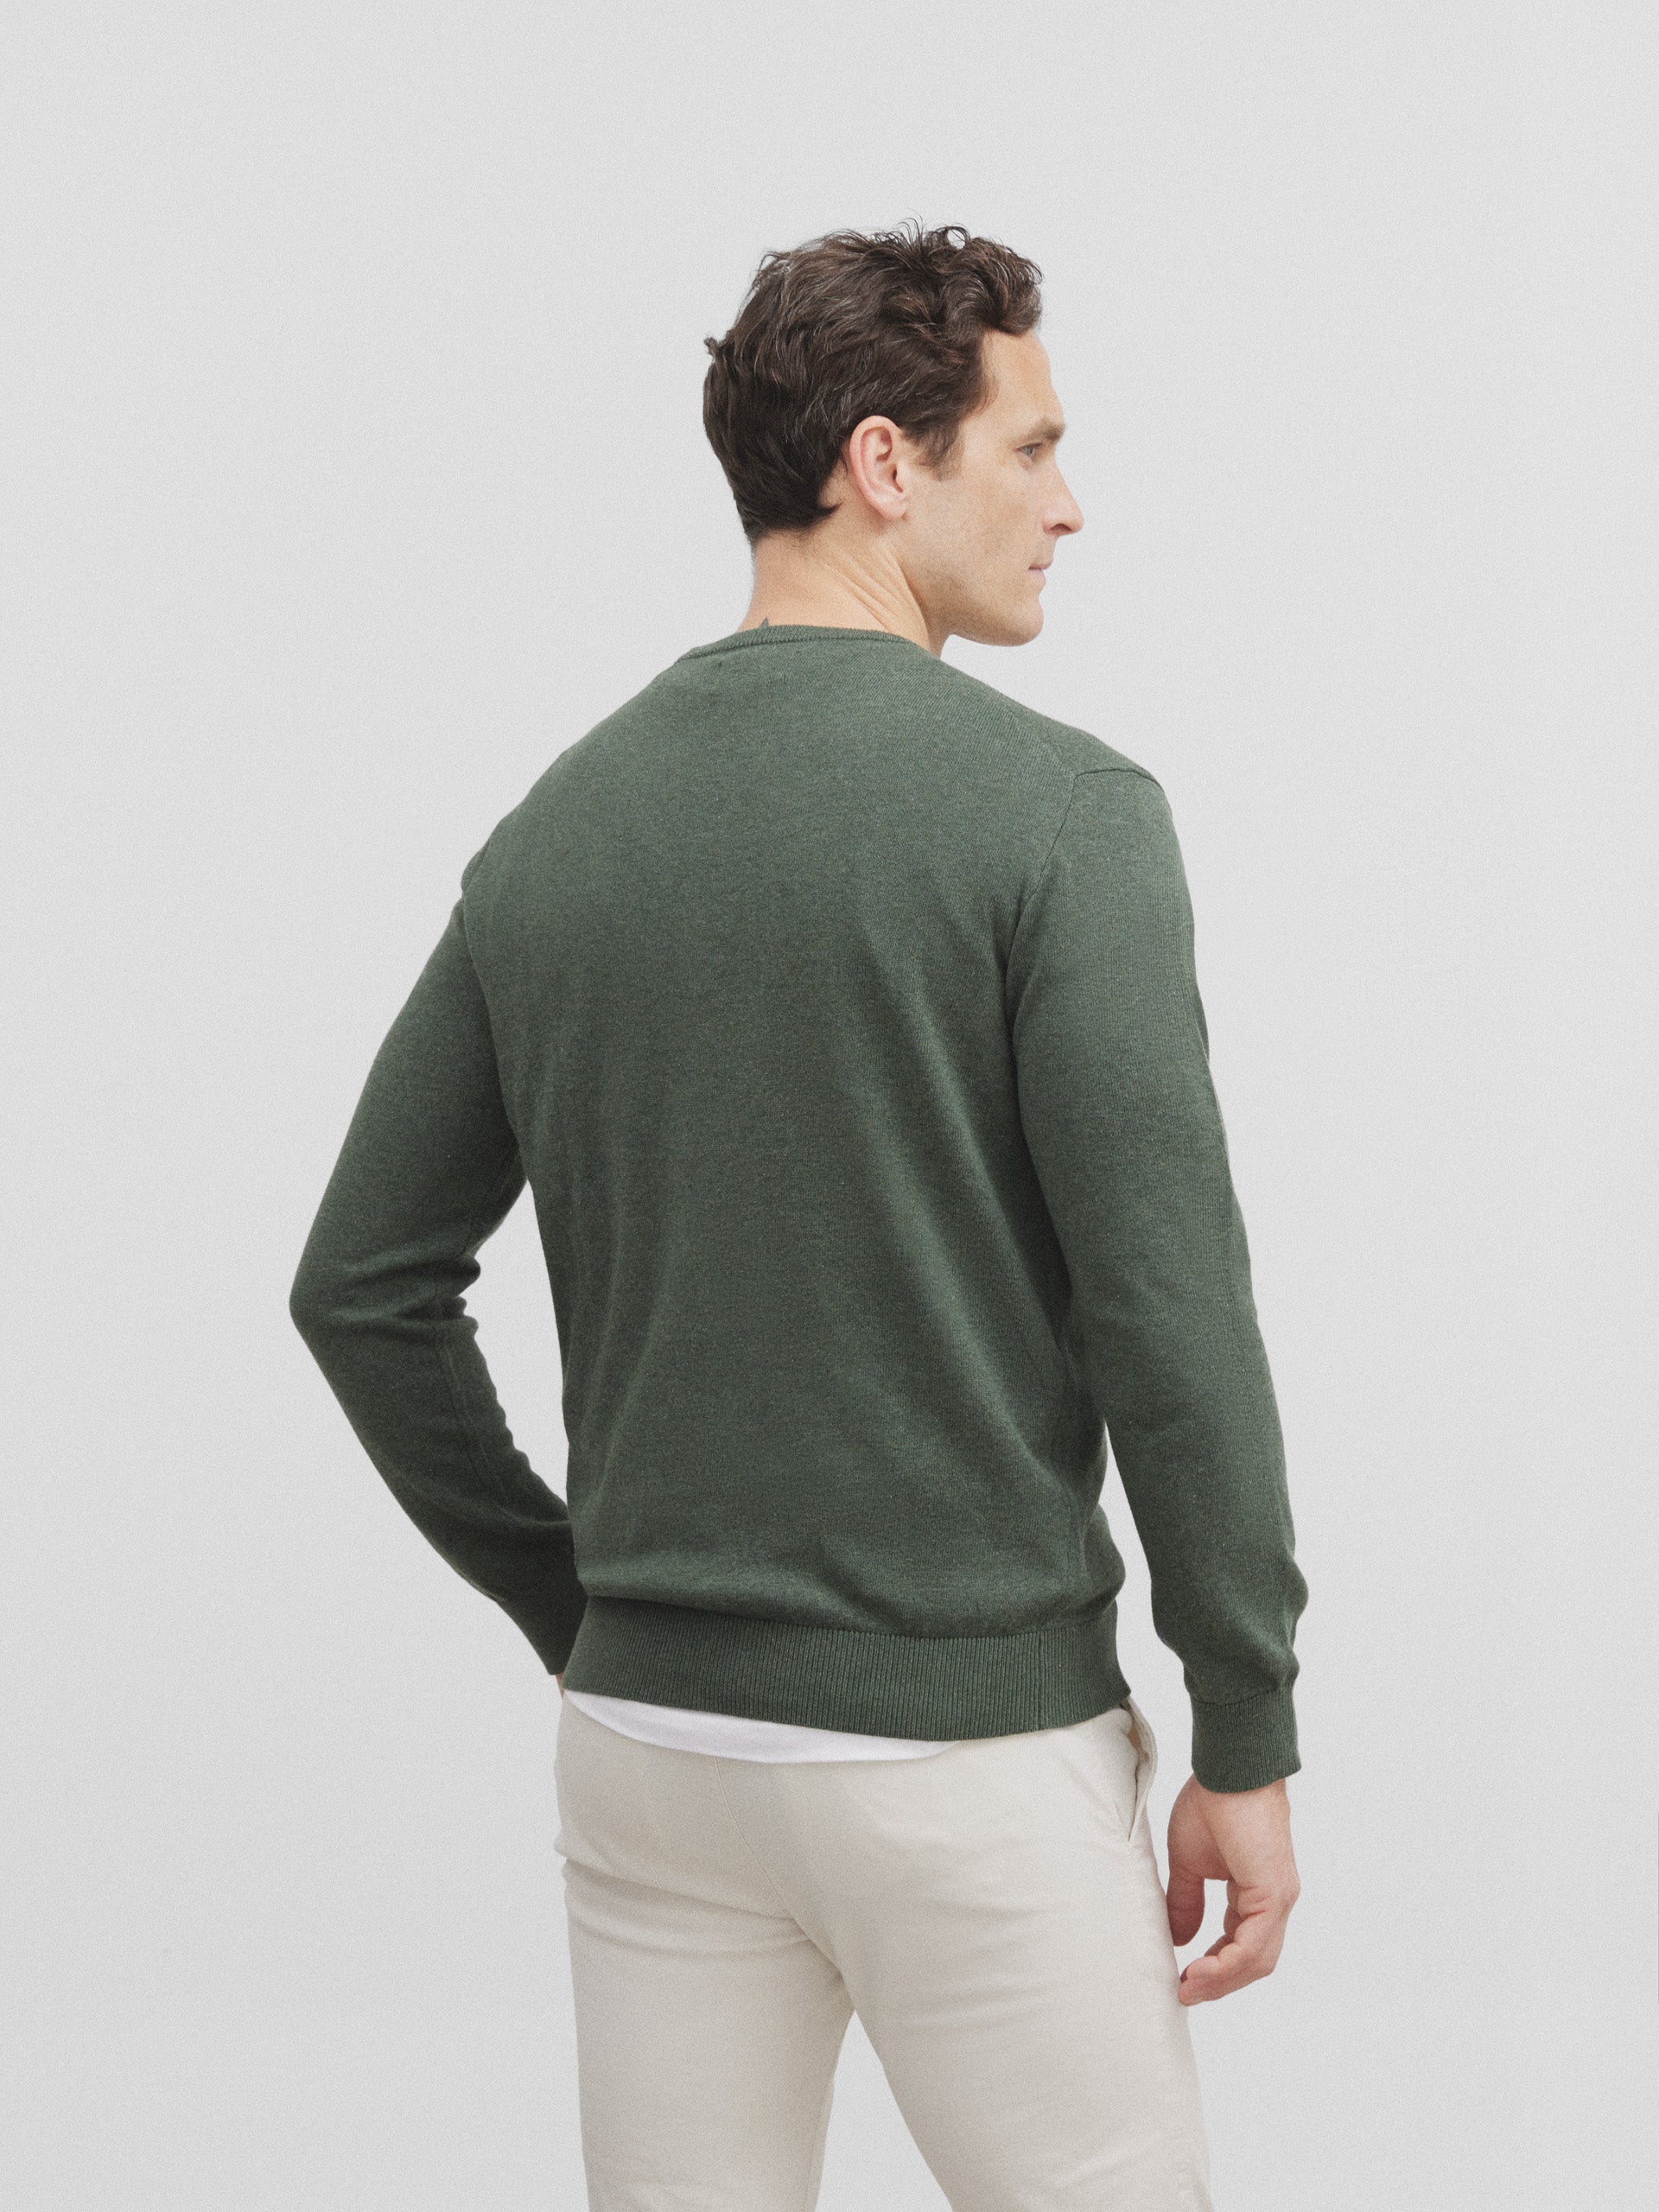 Green round neck sweater